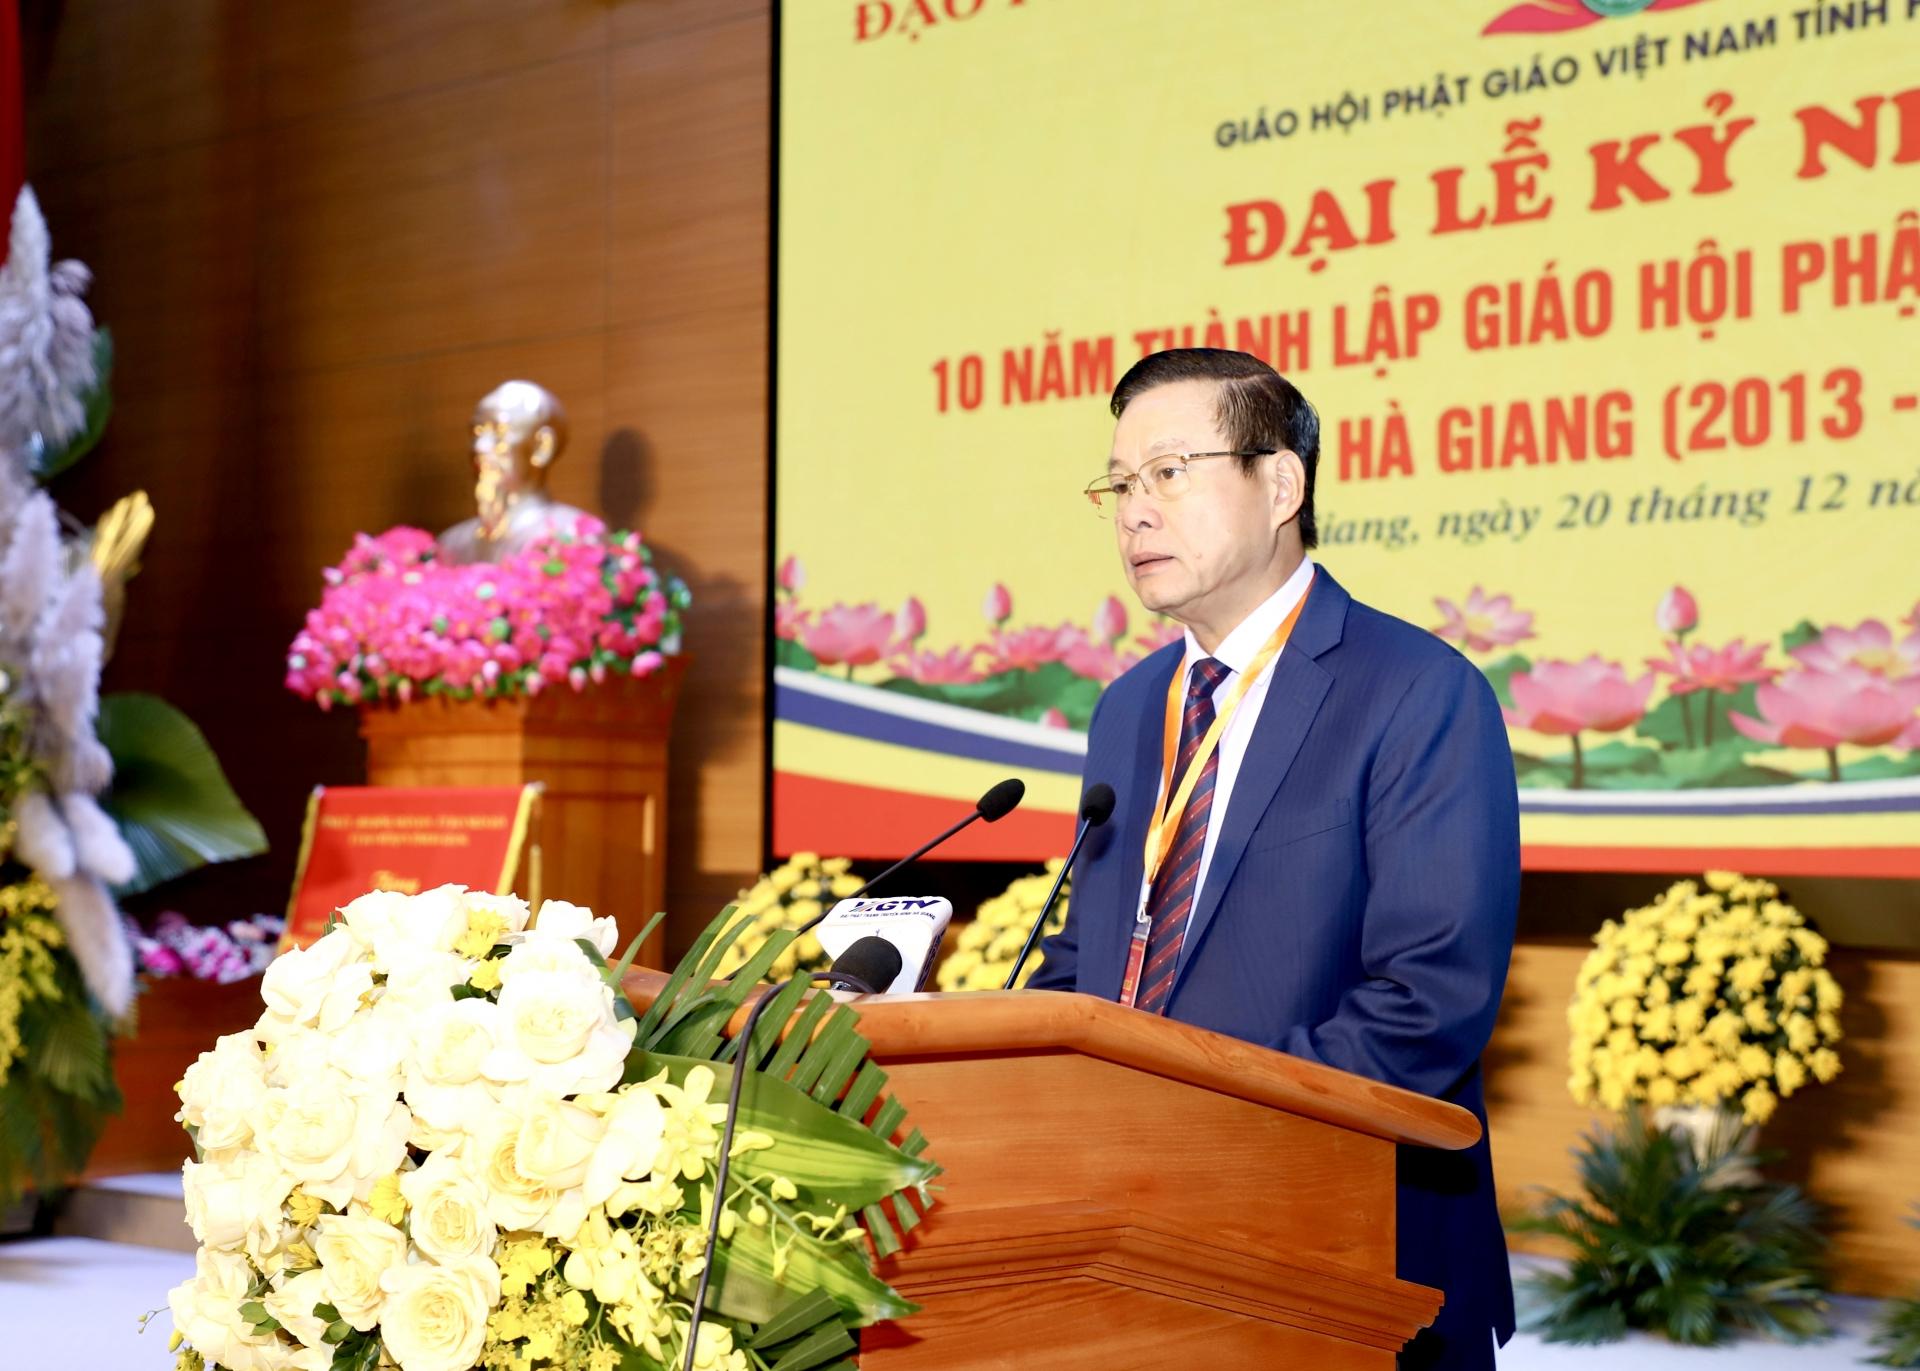 Chủ tịch UBND tỉnh Nguyễn Văn Sơn phát biểu tại Đại lễ